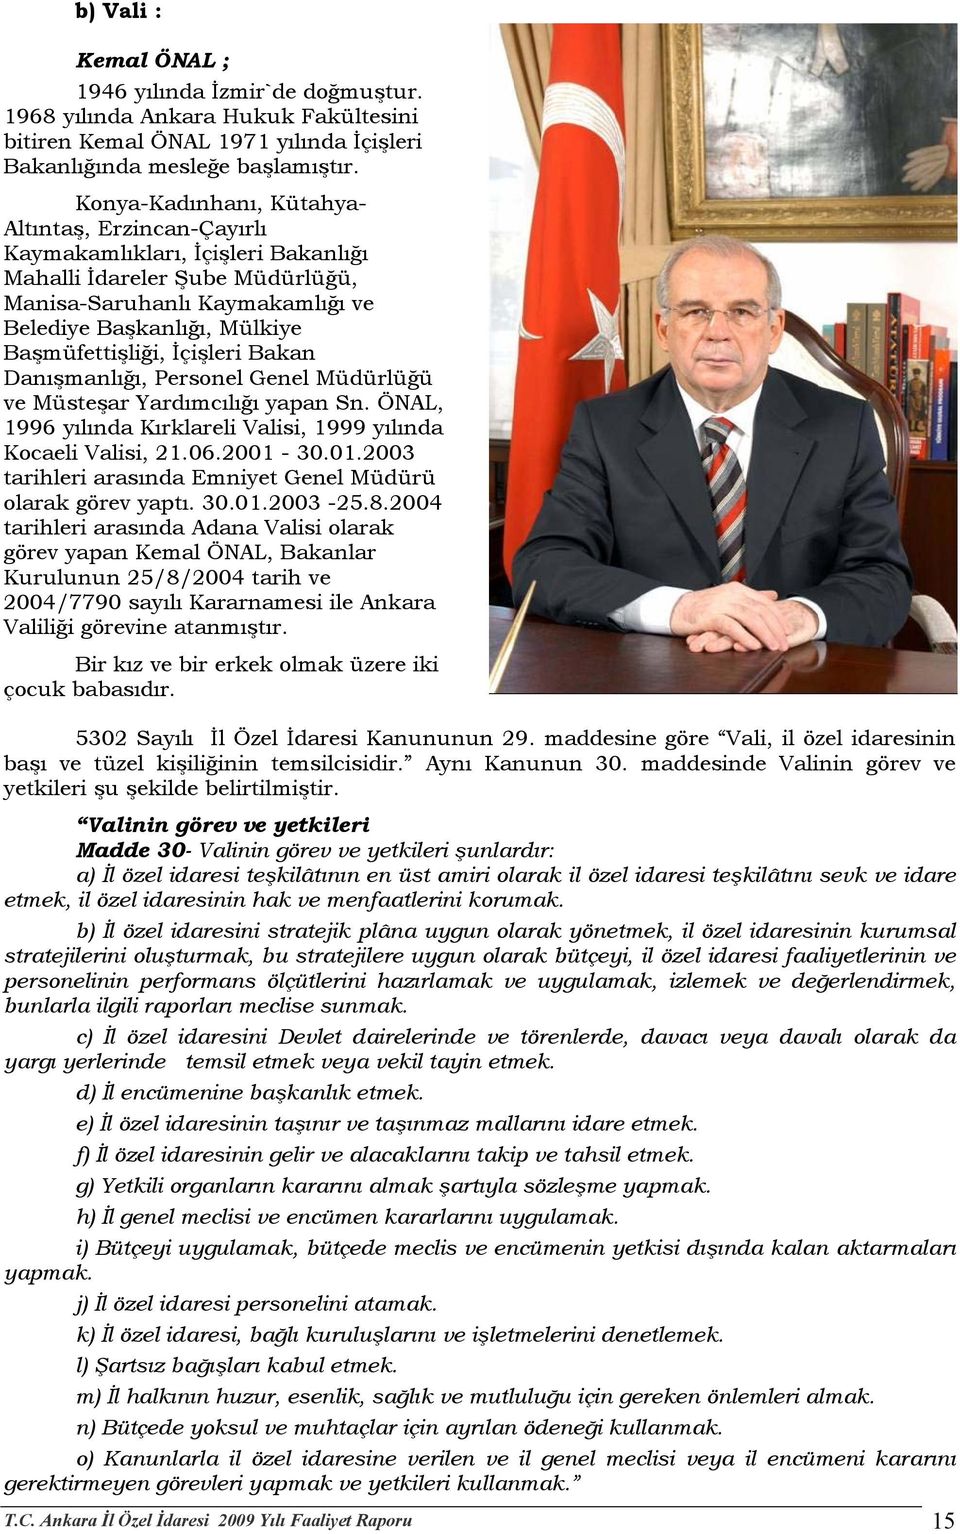 Başmüfettişliği, İçişleri Bakan Danışmanlığı, Personel Genel Müdürlüğü ve Müsteşar Yardımcılığı yapan Sn. ÖNAL, 1996 yılında Kırklareli Valisi, 1999 yılında Kocaeli Valisi, 21.06.2001-